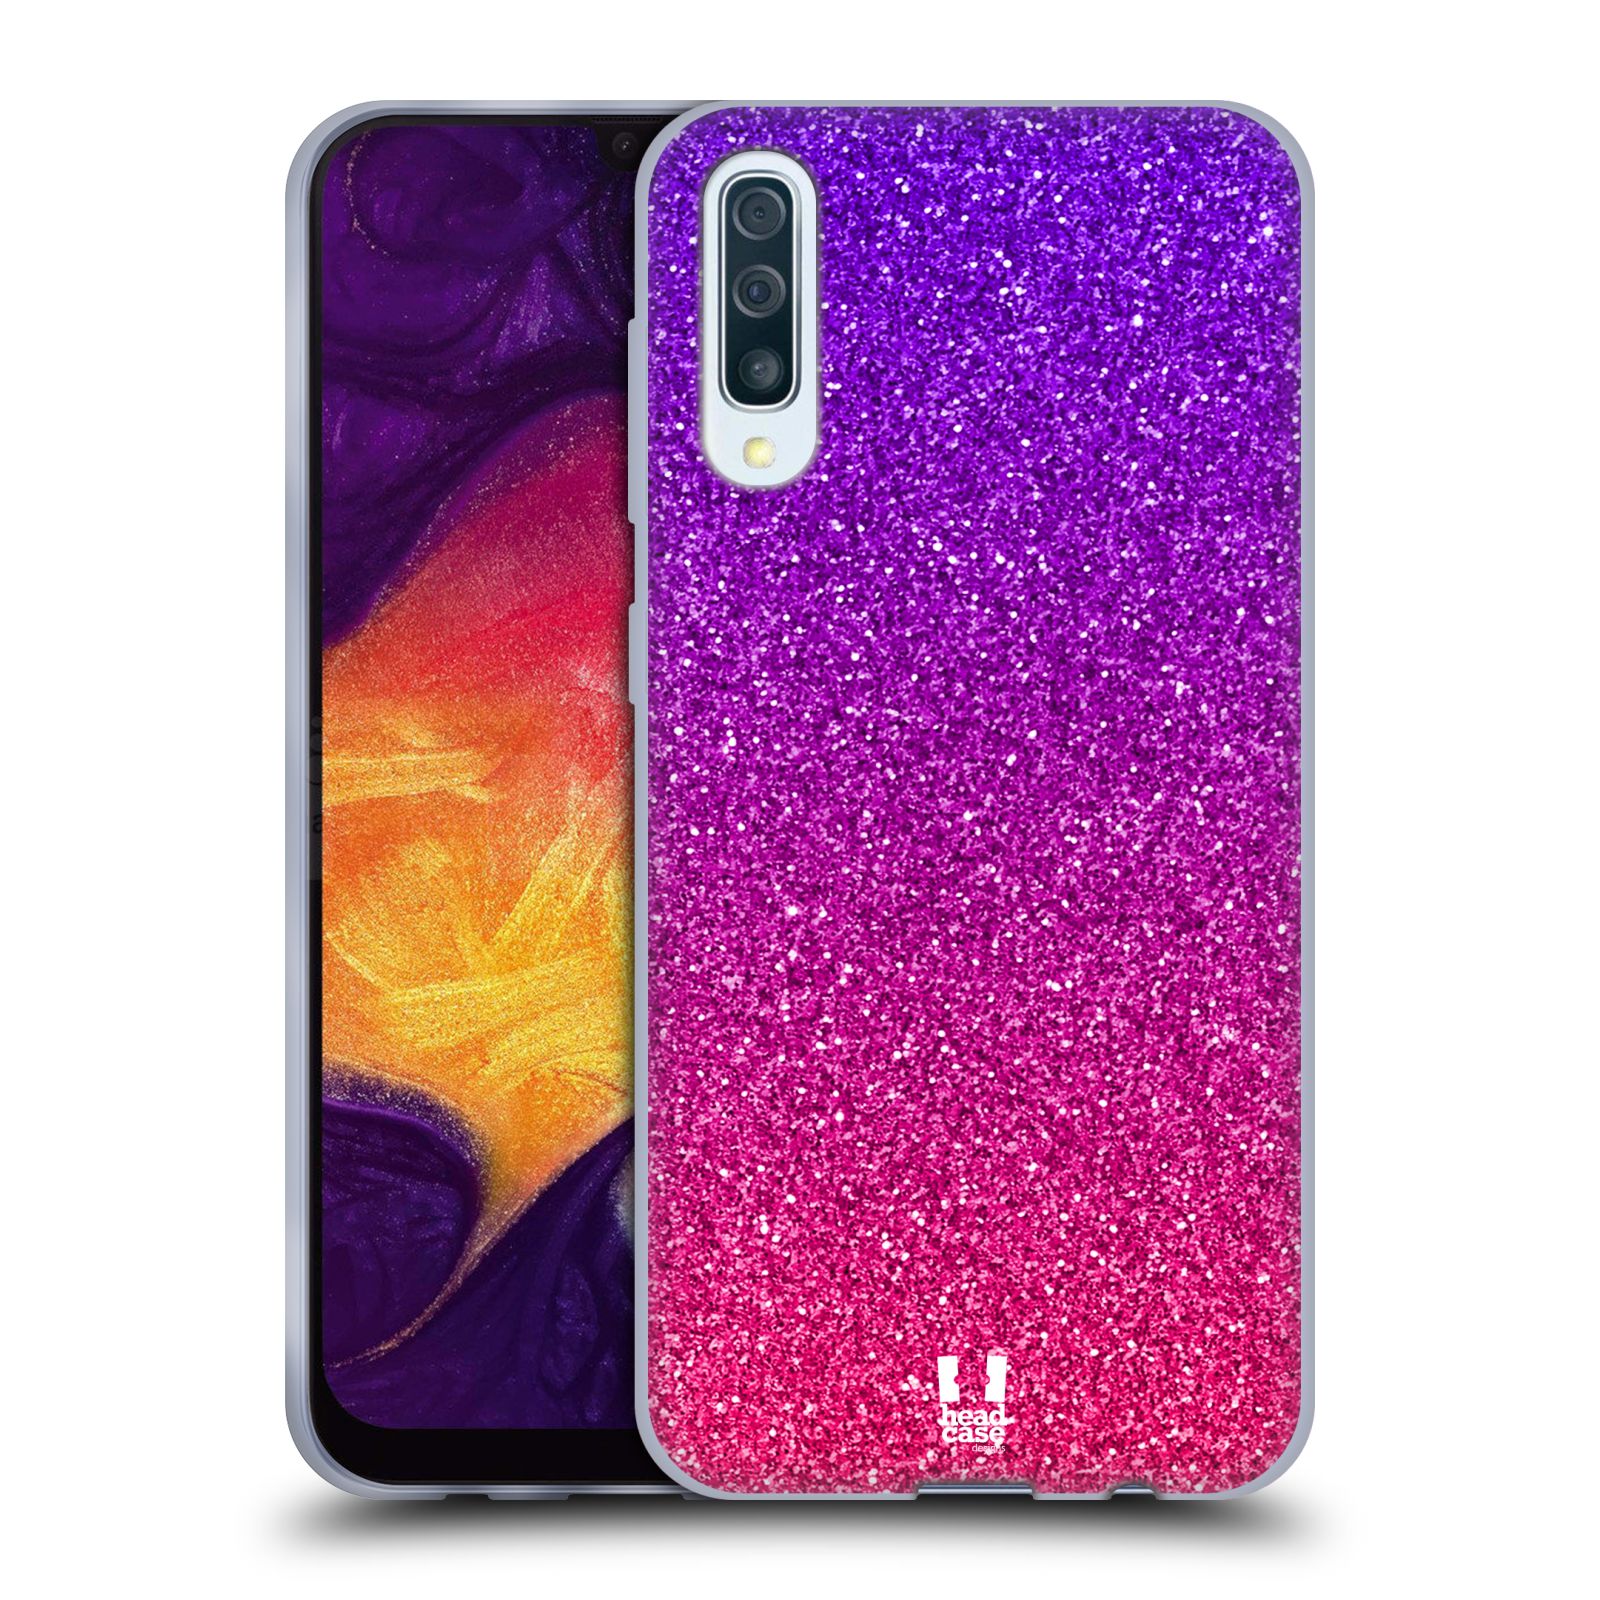 Silikonové pouzdro na mobil Samsung Galaxy A50 / A30s - Head Case - Mix Pink (Silikonový kryt, obal, pouzdro na mobilní telefon Samsung Galaxy A50 / A30s z roku 2019 s motivem Mix Pink)